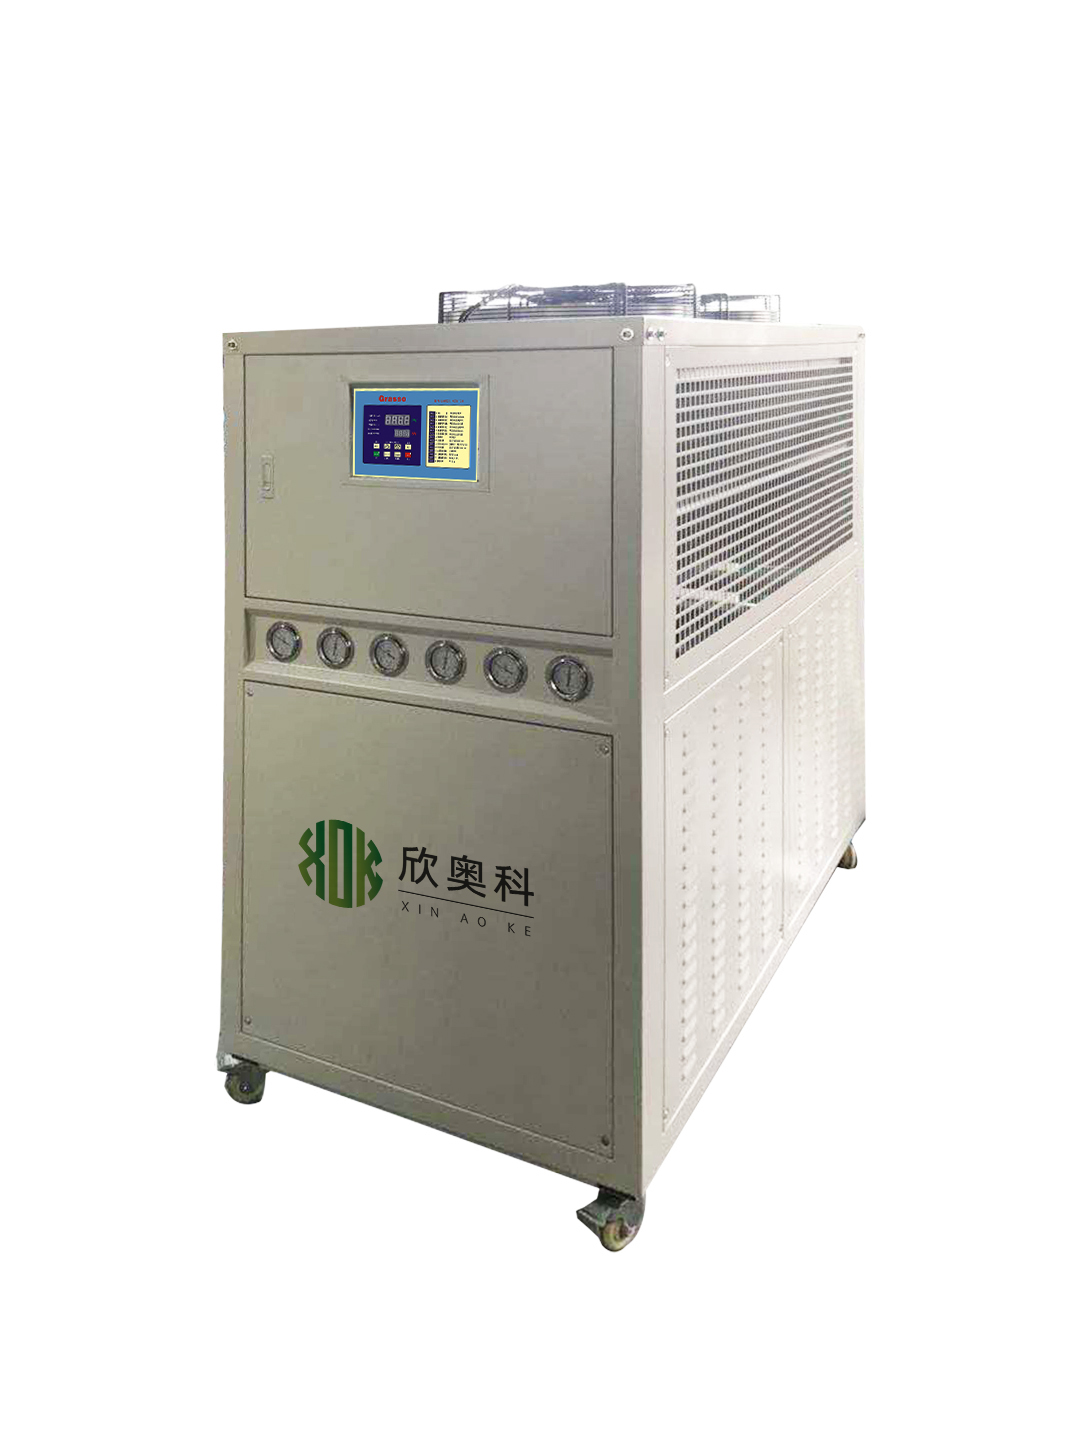 核磁共振冷水机  加速器冷水机  荧光光谱仪冷水机  原子吸收仪冷水机 工业冷水机图片